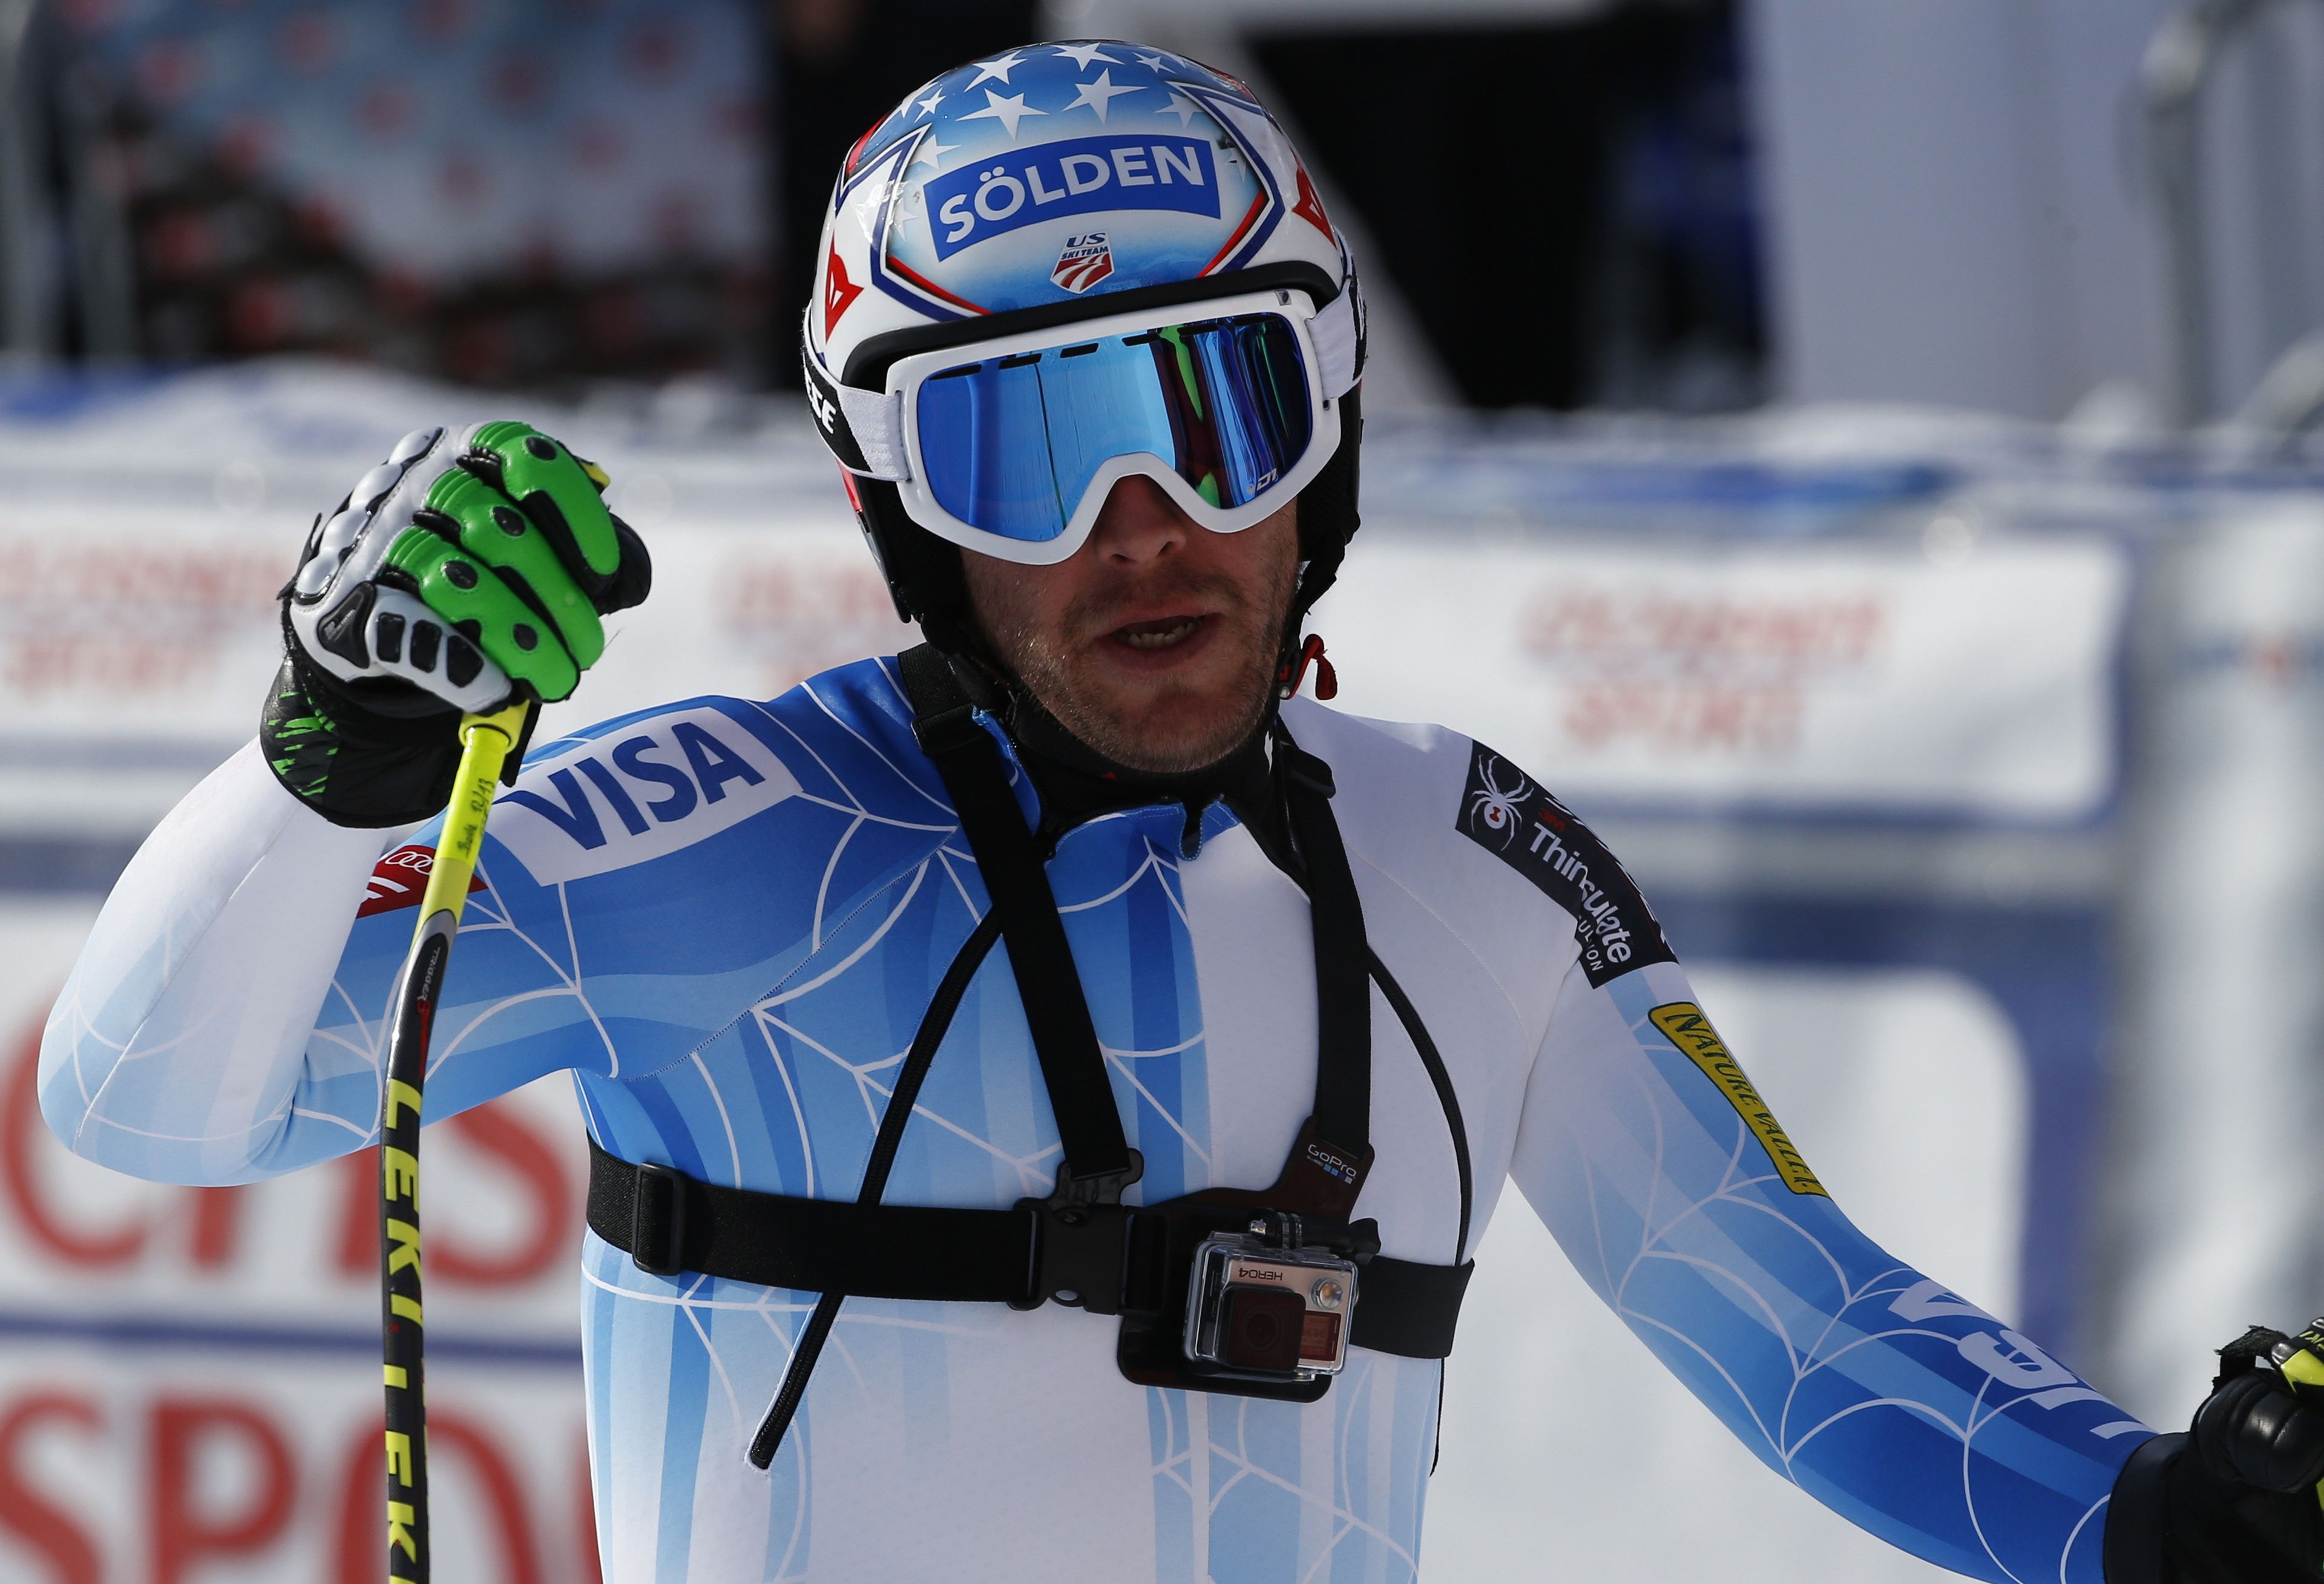 El esquiador estadounidense Bode Miller compite con una cámara GoPro.